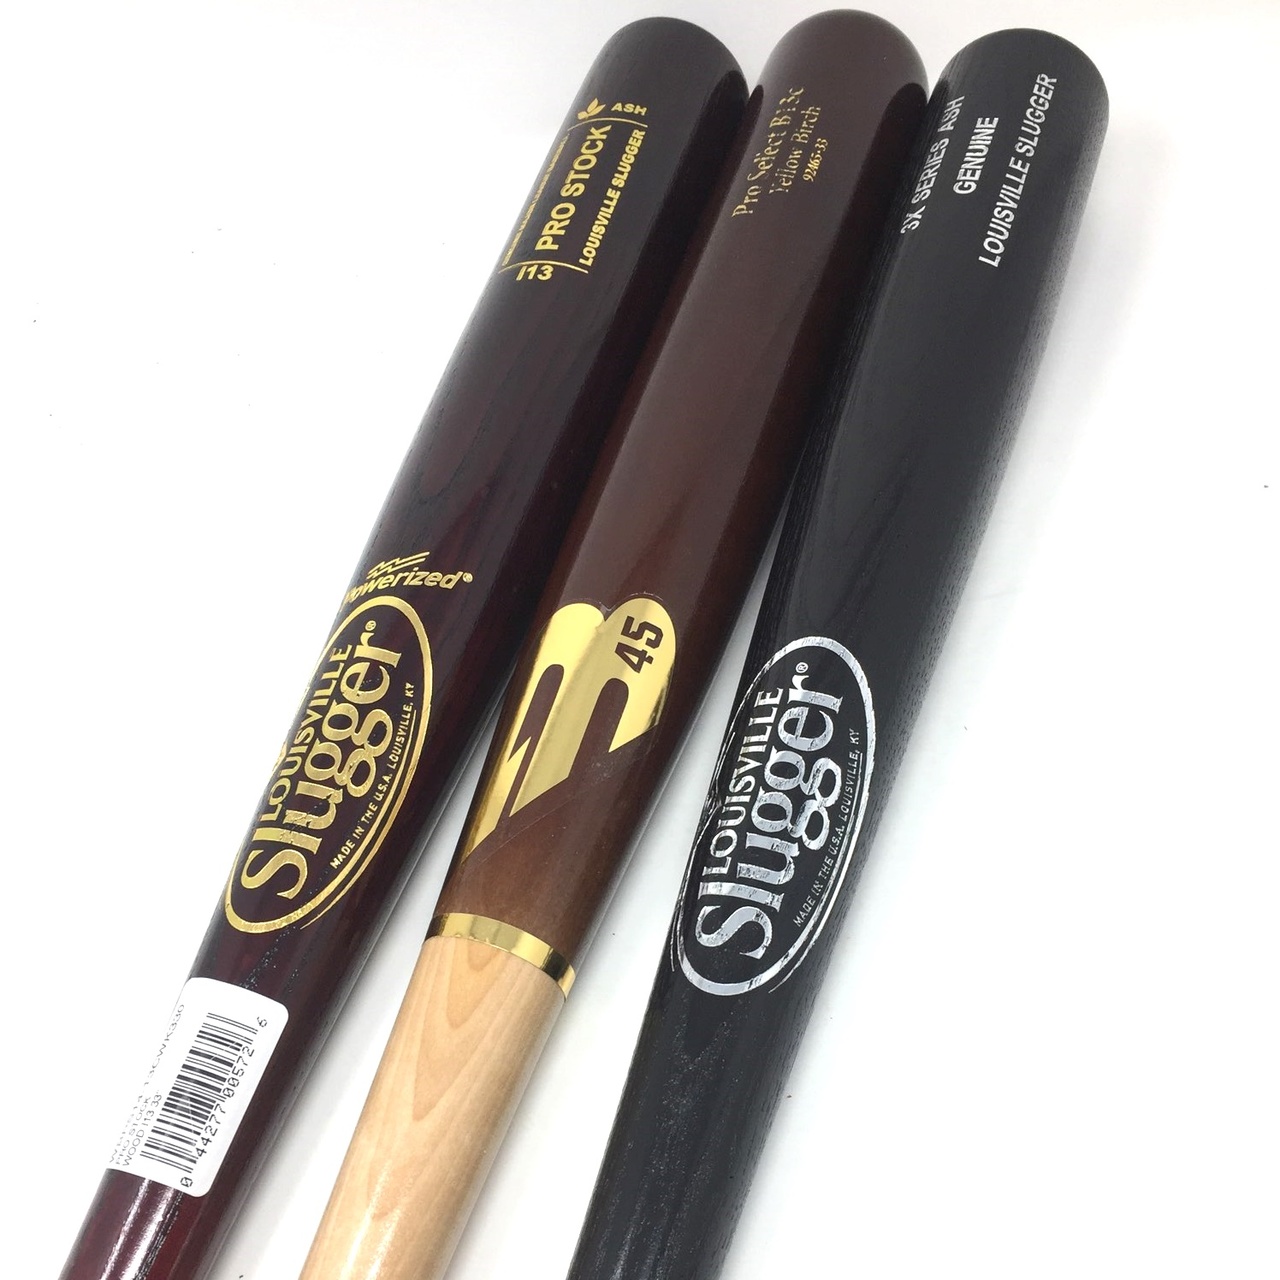 33 inch wood bats. 3 Bats in Total. 1 B45 Yellow Birch 33 inch I13. 1 Louisville Slugger Ash 33 inch. 1 Louisville Slugger Pro Stock I13 Ash.